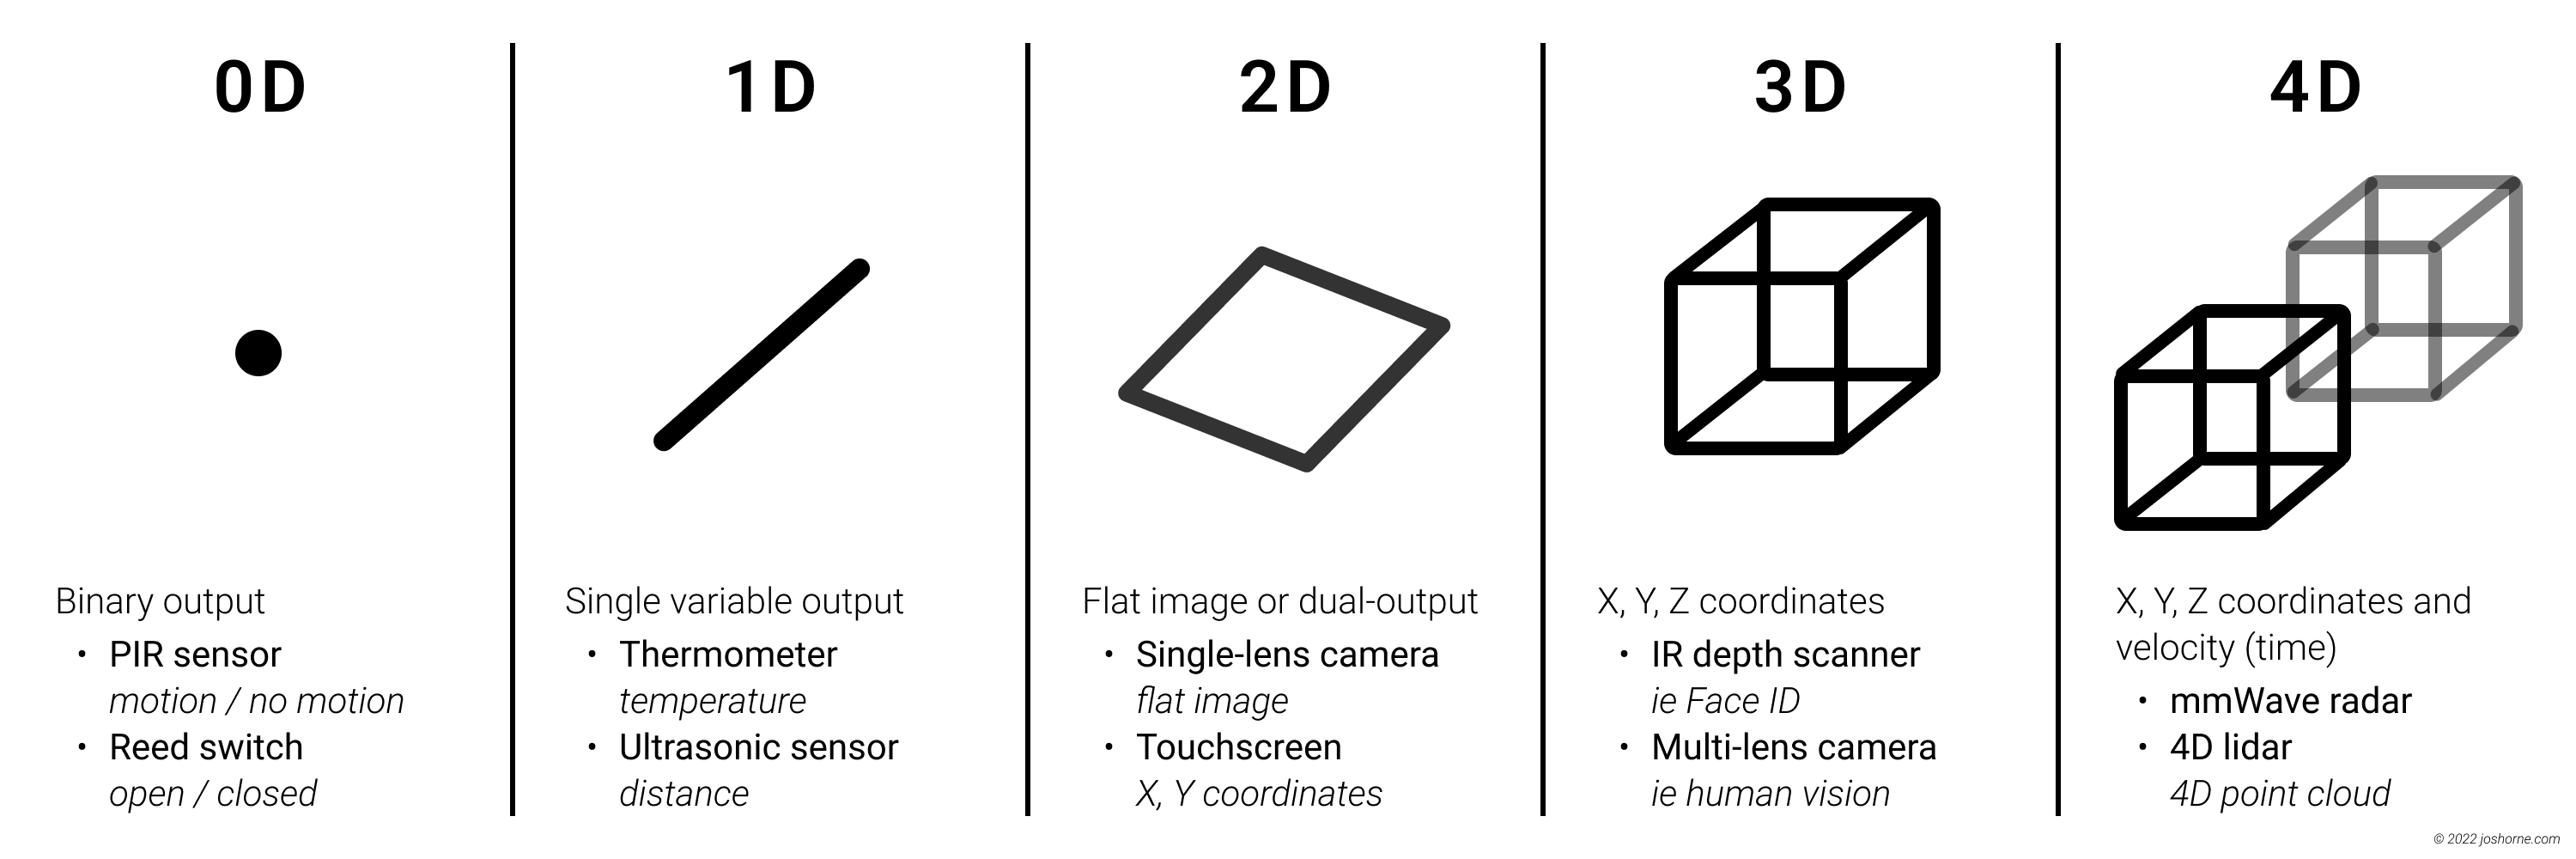 Examples of sensors in 0D, 1D, 2D, 3D, and 4D